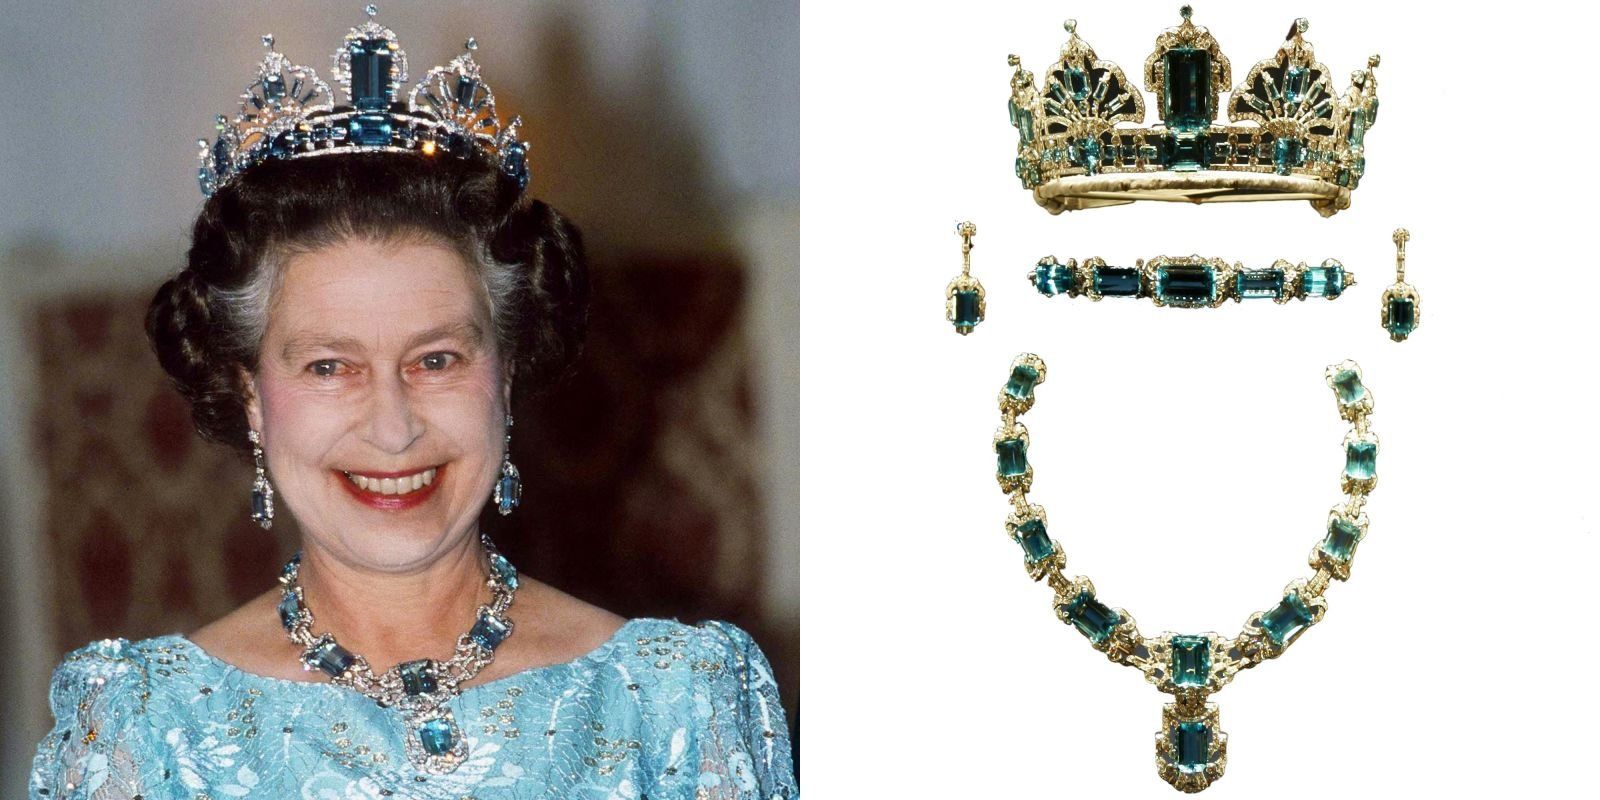 エリザベス女王からキャサリン妃へ 英国王室に受け継がれるティアラ17